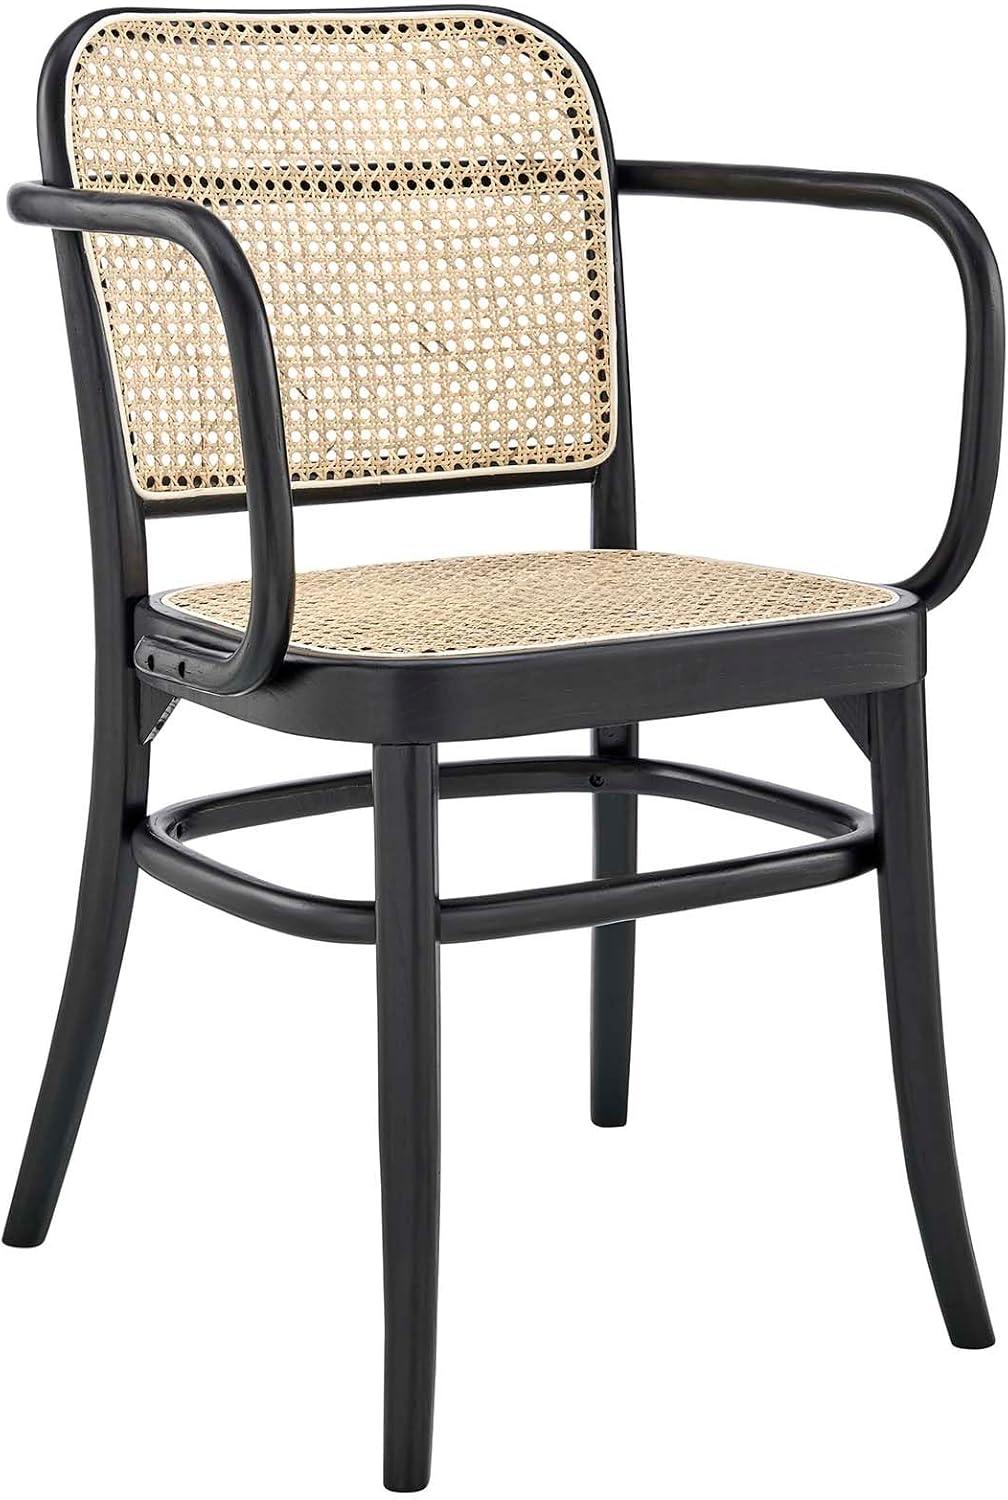 Low Profile Black Elm Wood & Cane Arm Chair